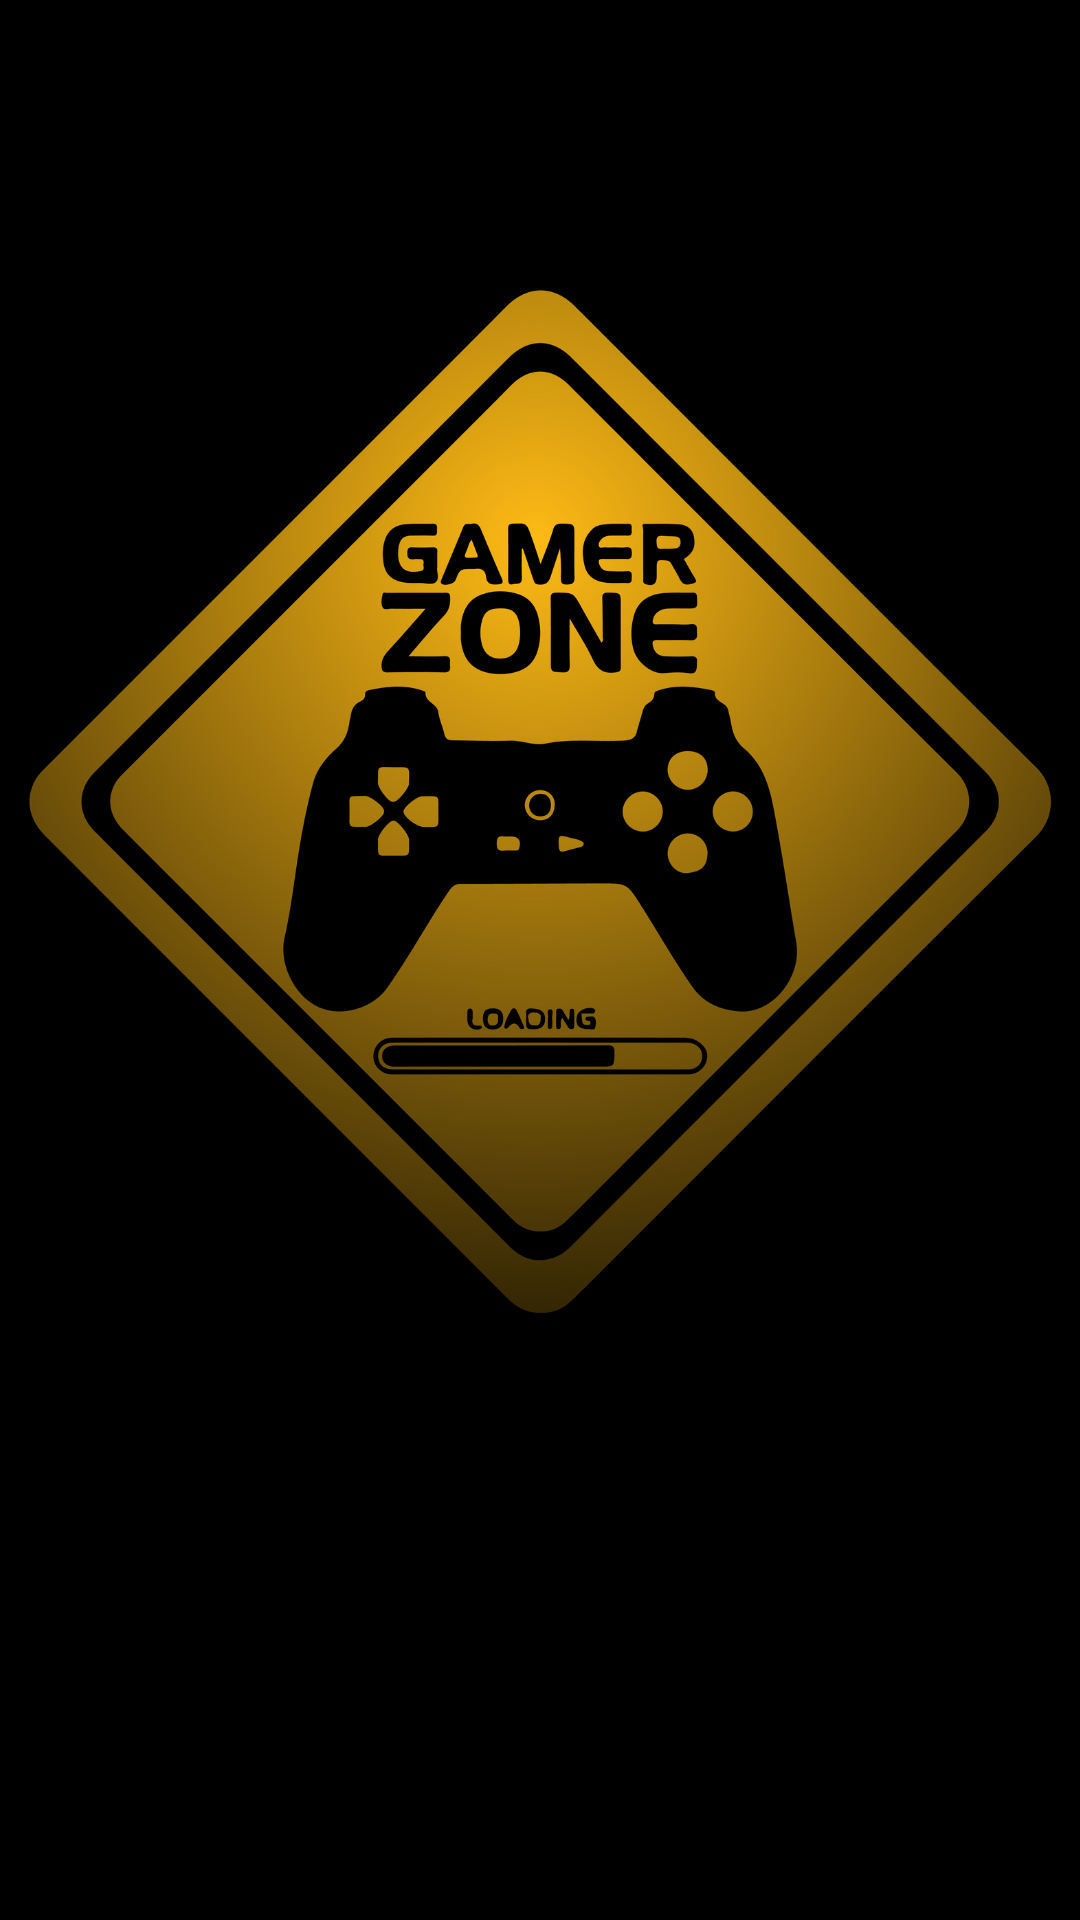 Gamer Zone traffic sign. #Game #Original #Zone #Gamer #Post. Game wallpaper iphone, Graffiti wallpaper iphone, Gaming wallpaper